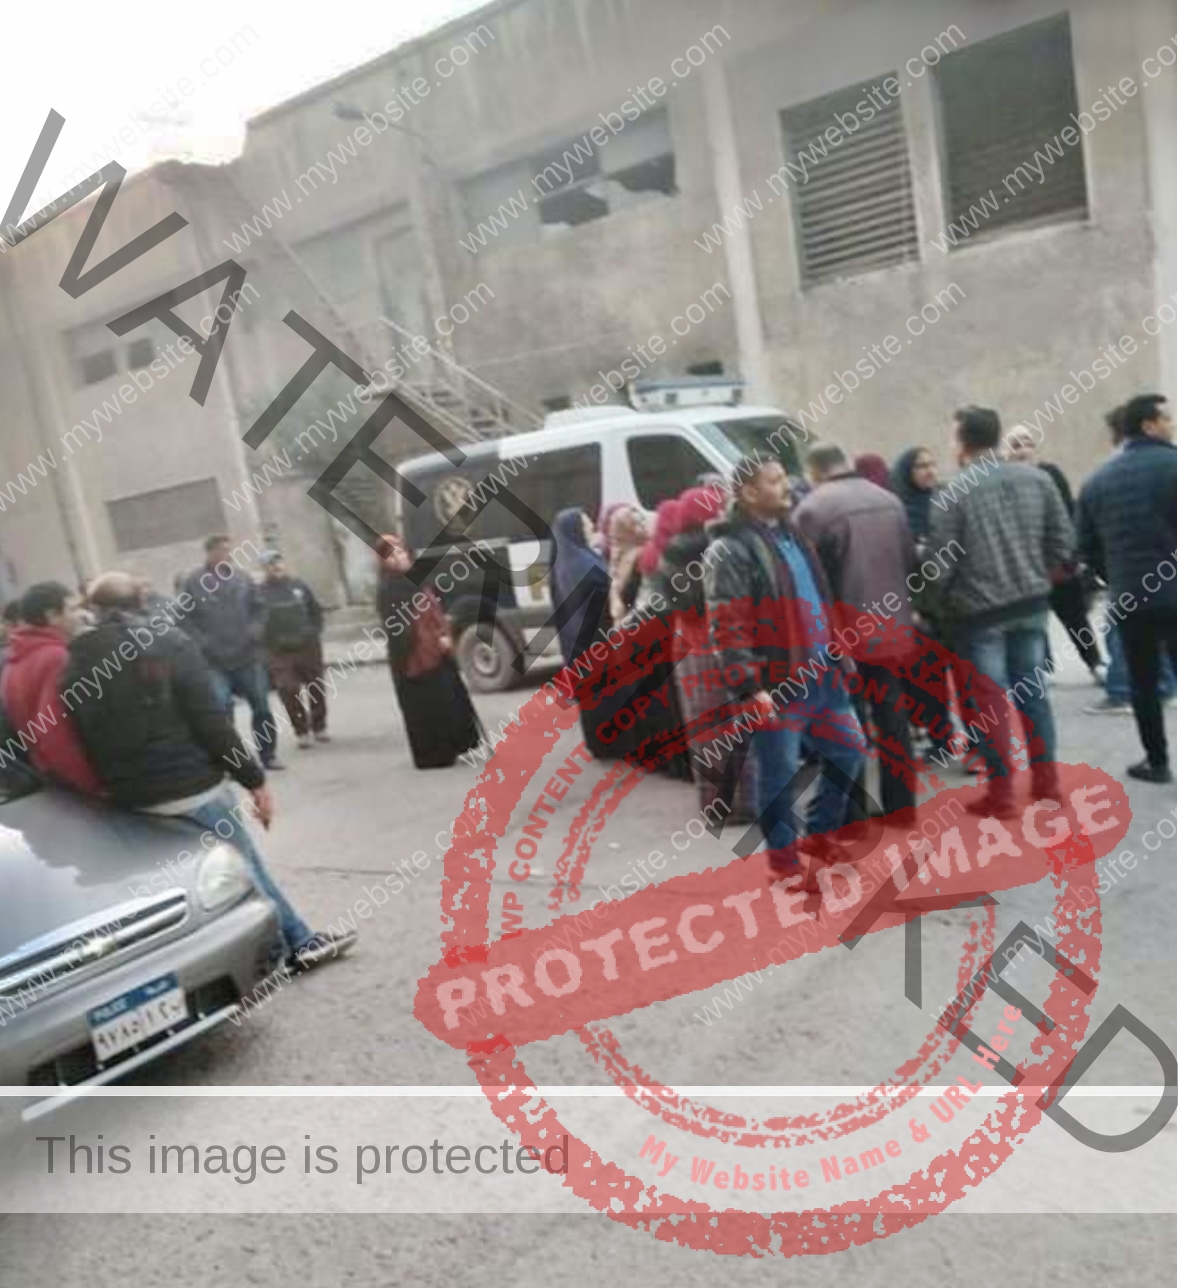 إصابة 7 عمال في إنهيار سقف شركة النصر للغزل والنسيج بالمحلة الكبرى